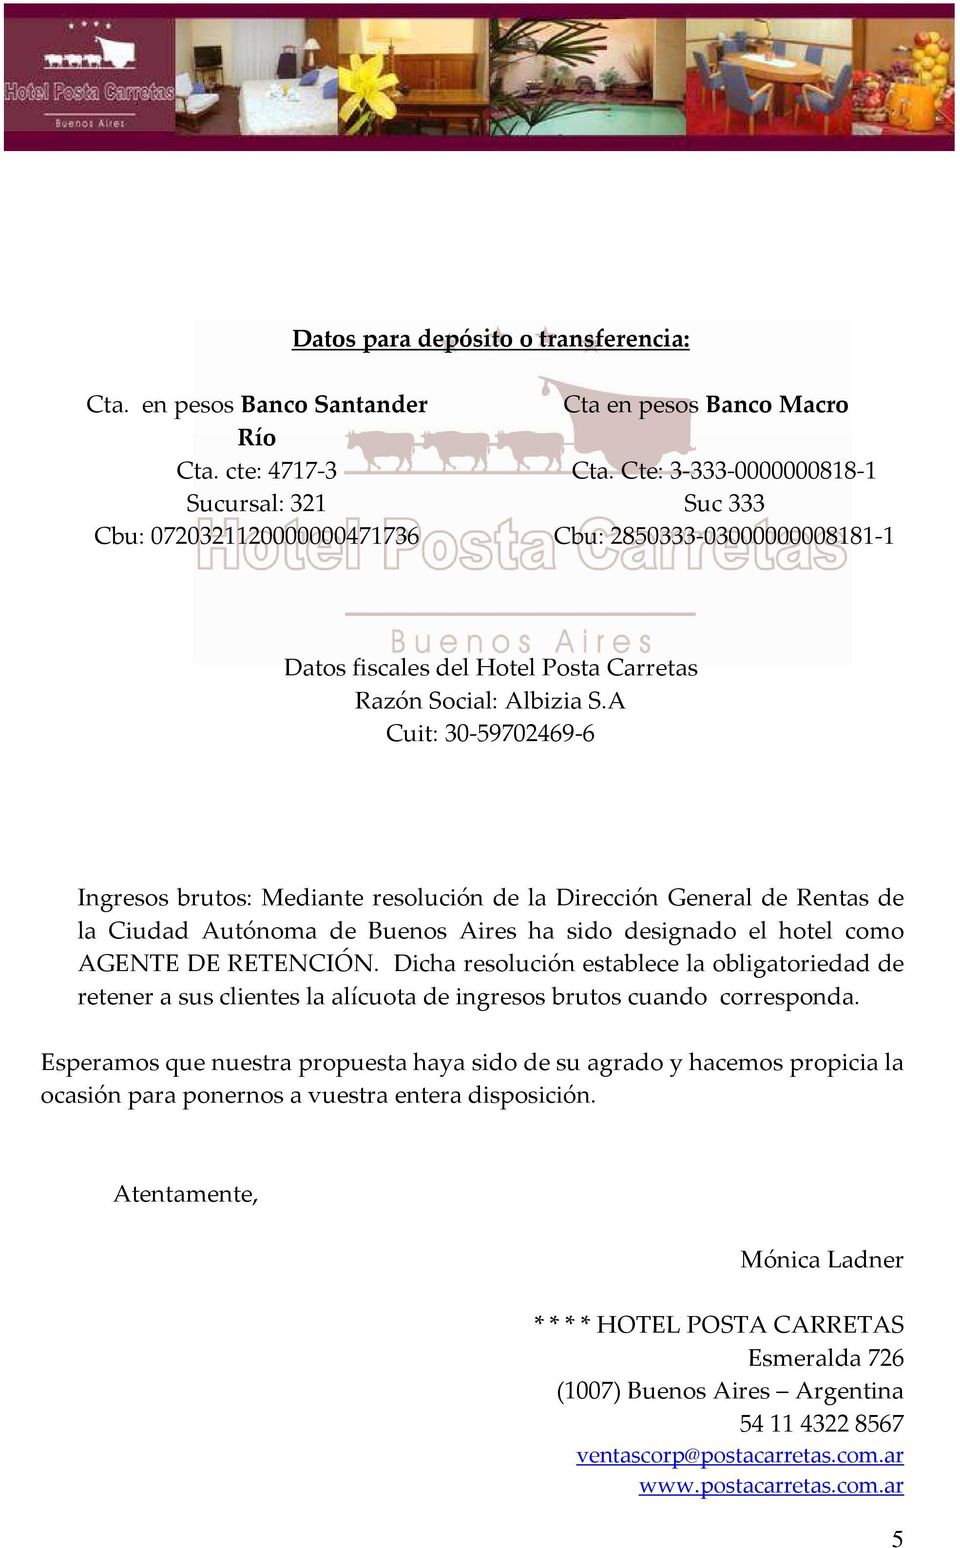 A Cuit: 30-9702469-6 Ingresos brutos: Mediante resolución de la Dirección General de Rentas de la Ciudad Autónoma de Buenos Aires ha sido designado el hotel como AGENTE DE RETENCIÓN.